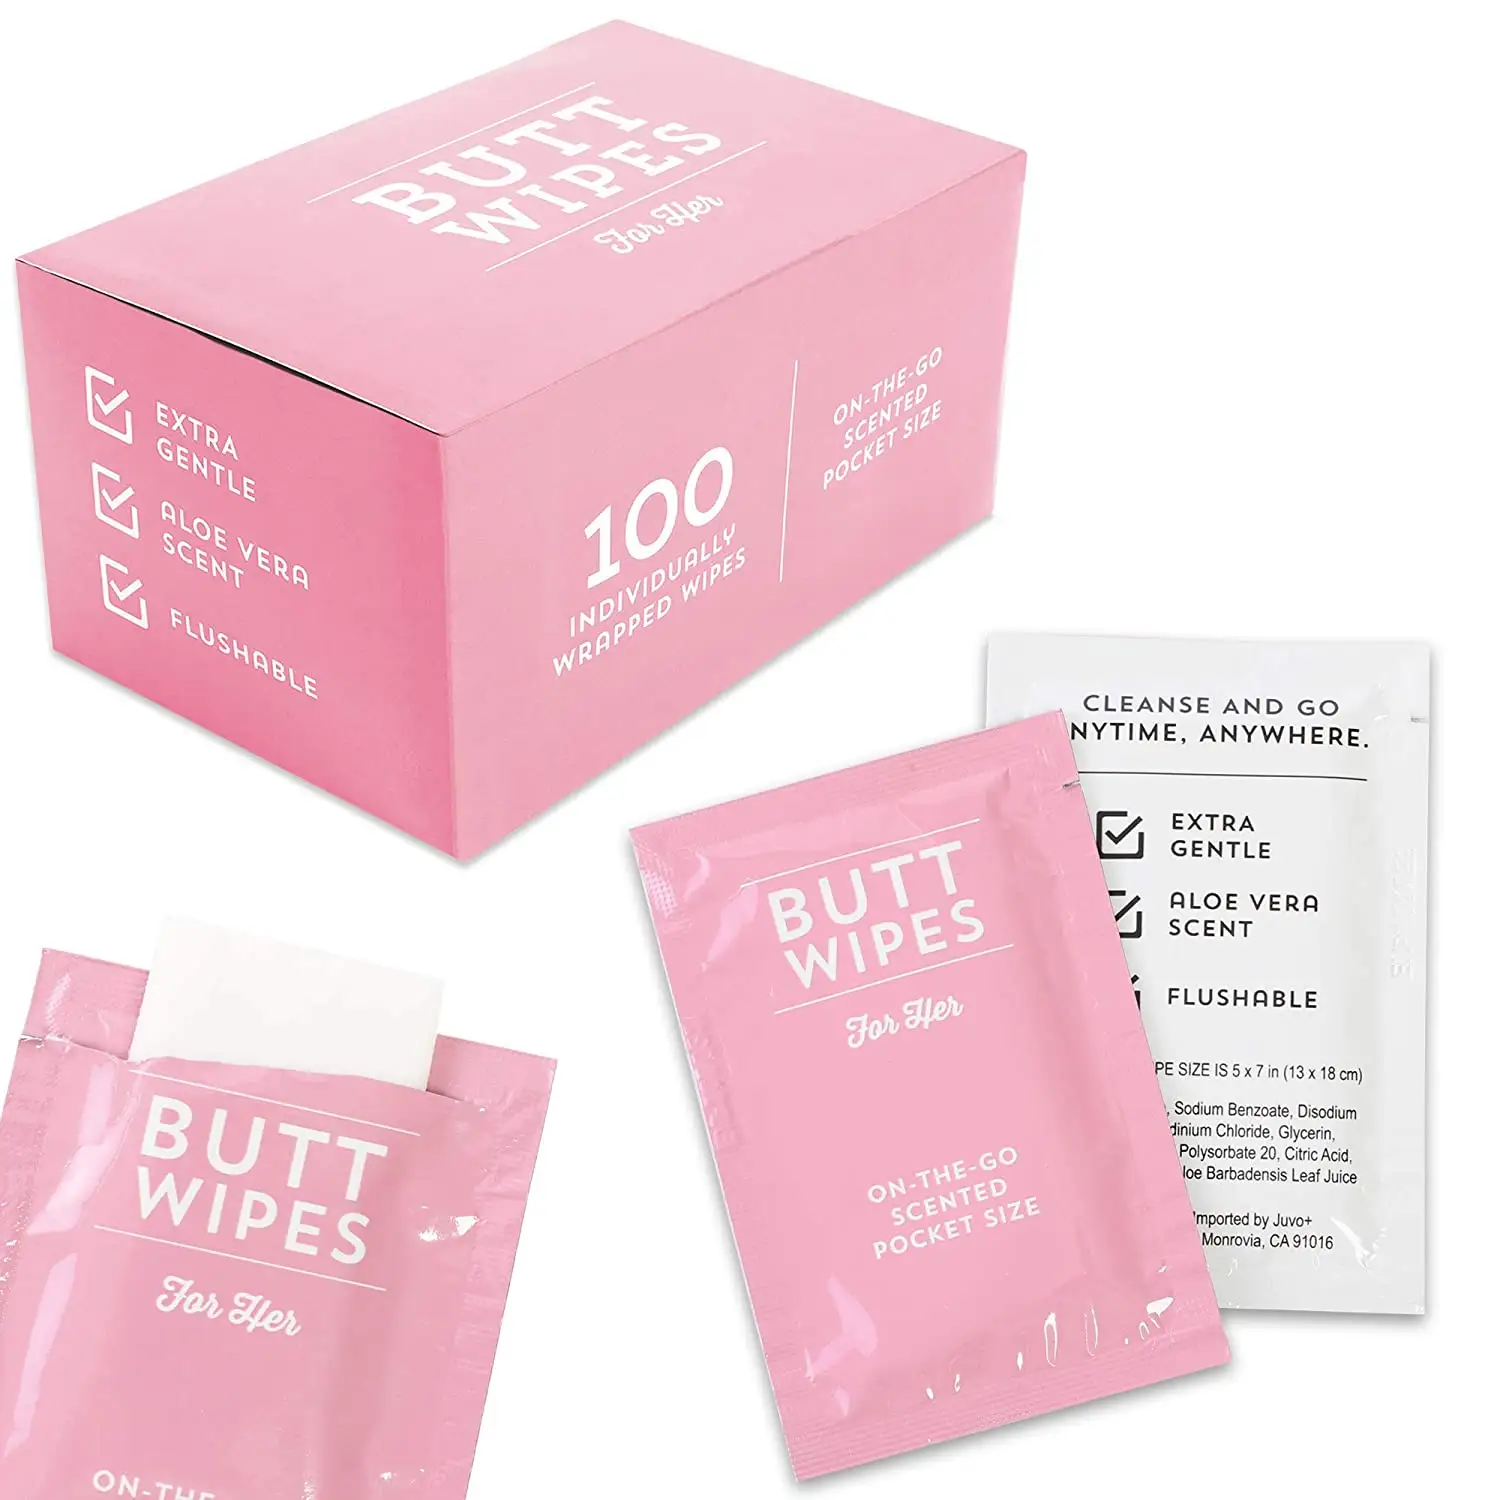 Lingettes d'hygiène féminine enveloppées individuelles de marque privée 100% lingettes jetables biodégradables